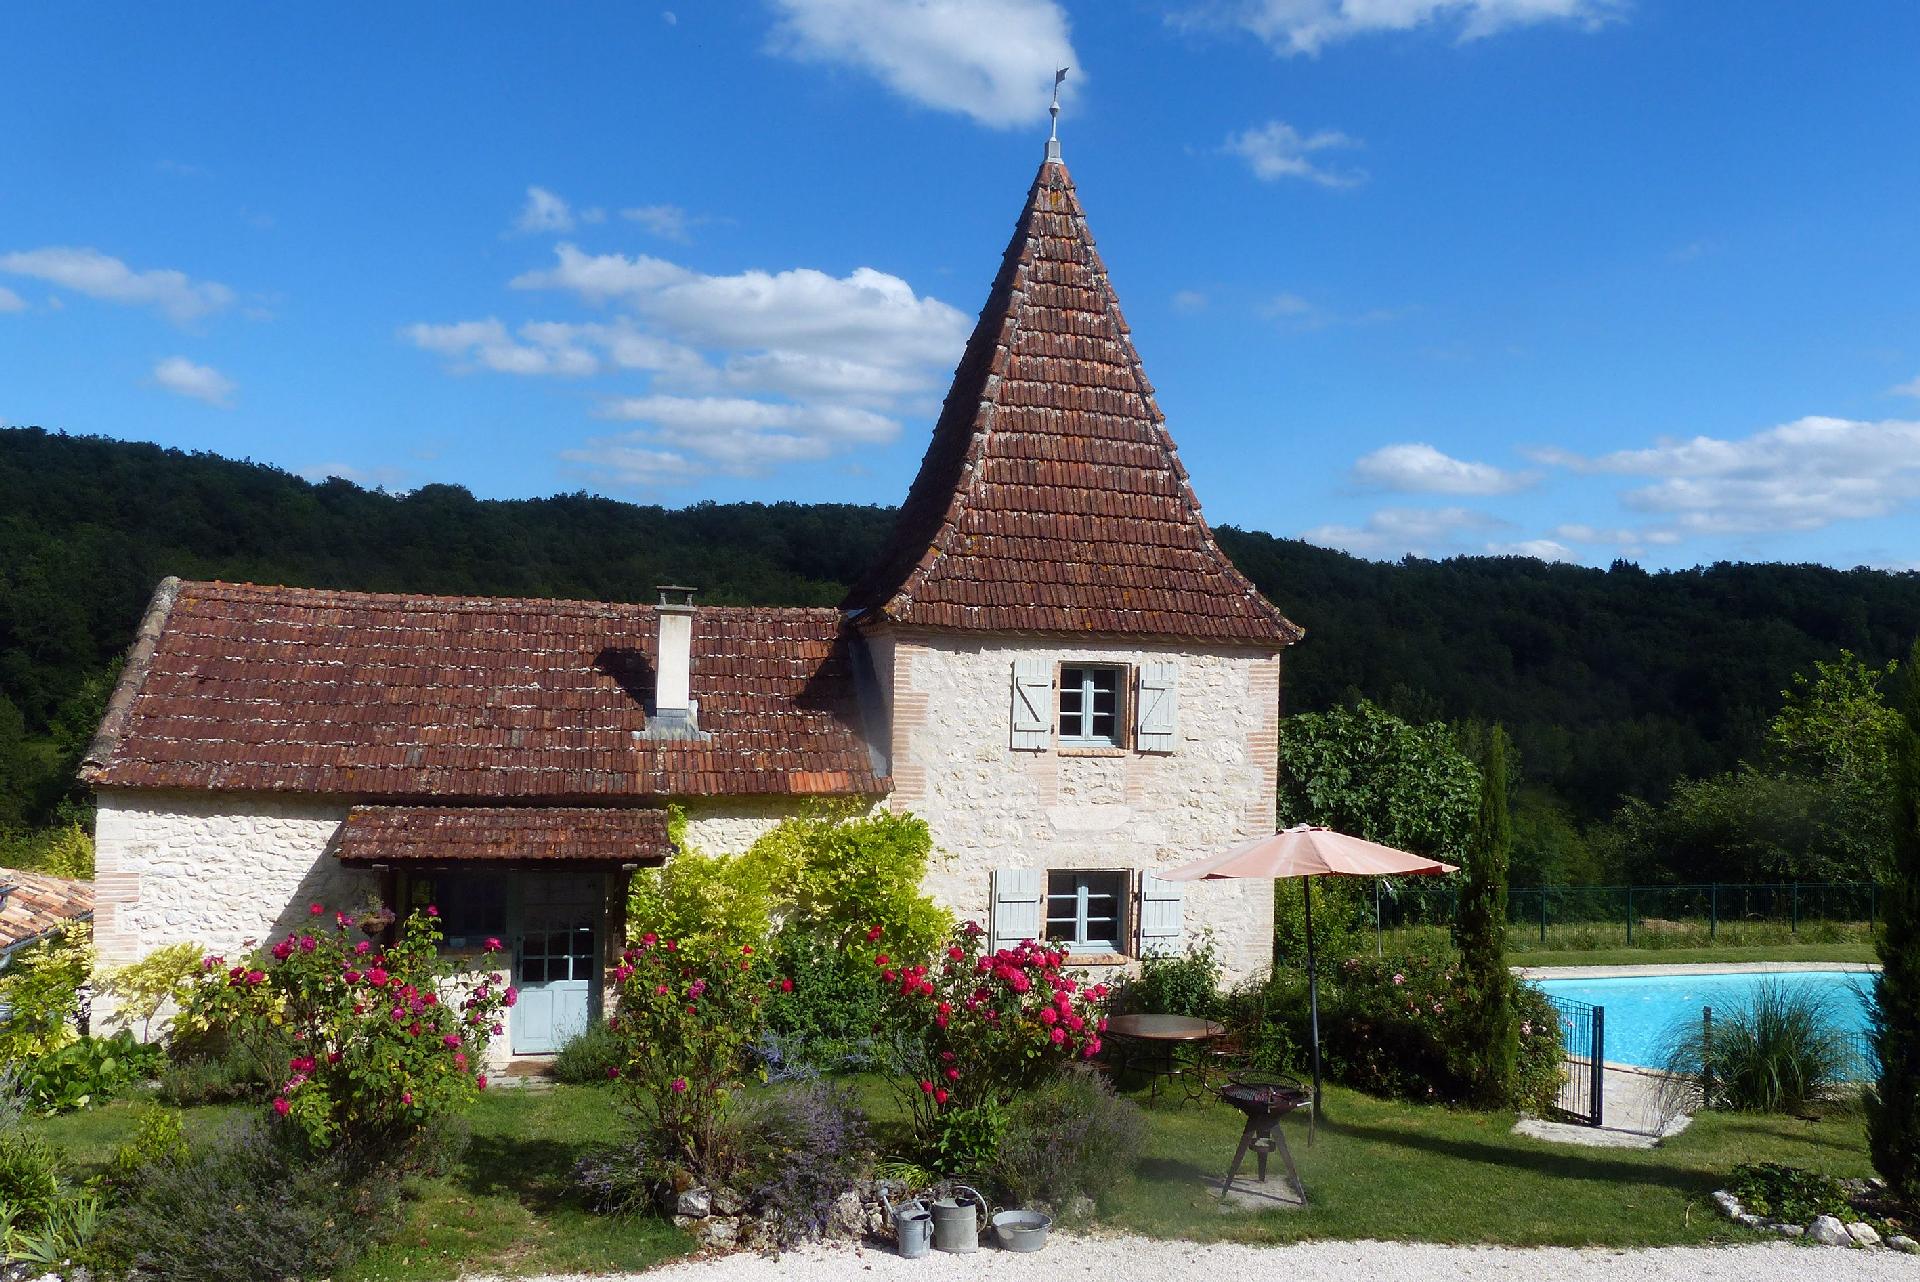 Familienfreundliches Ferienhaus auf einem Landgut  Ferienhaus in Frankreich